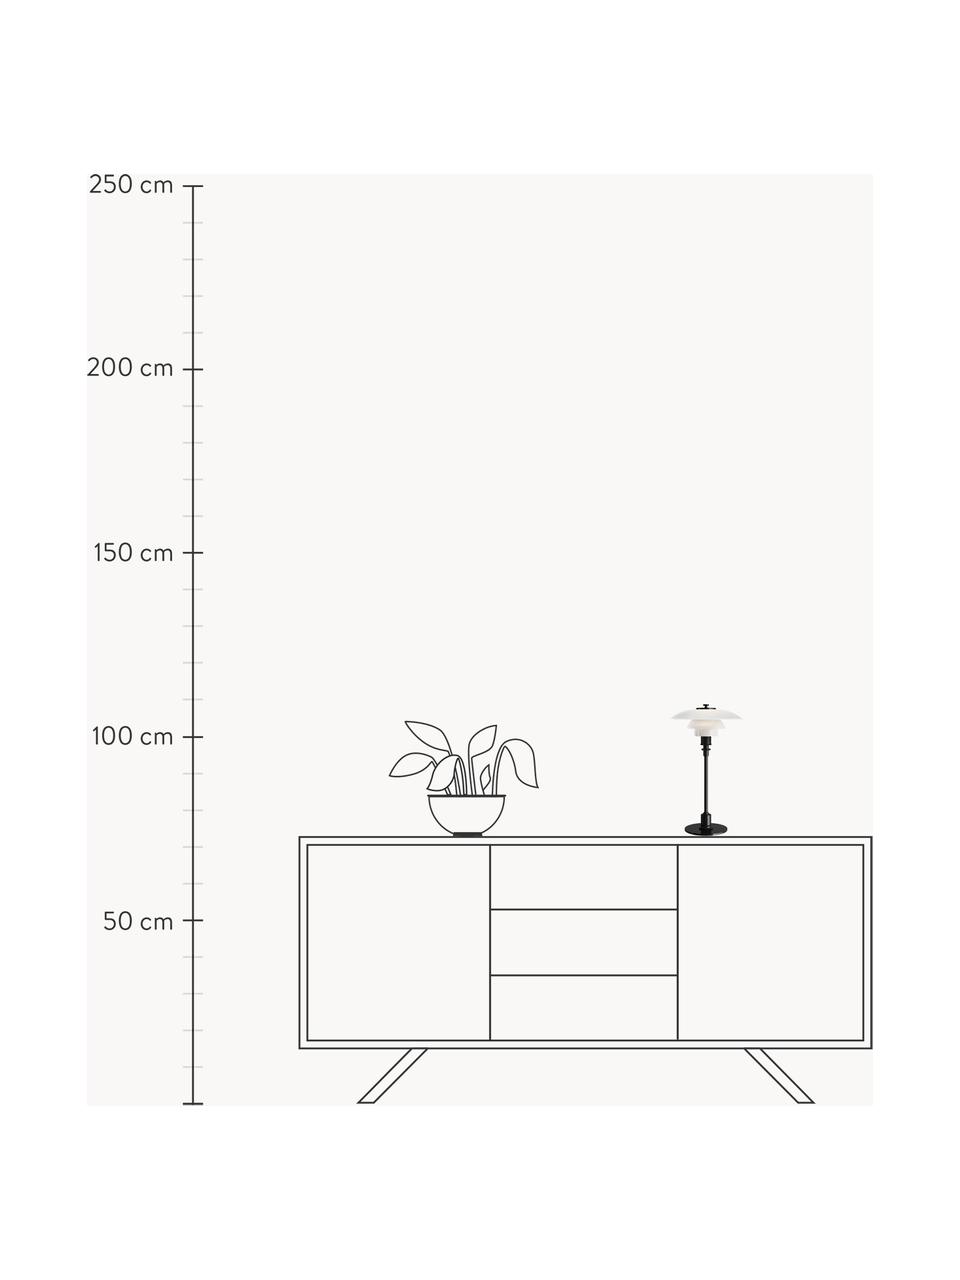 Lampa stołowa ze szkła dmuchanego PH 2/1, Stelaż: mosiądz metalizowany, Czarny, biały, Ø 20 x 36 cm